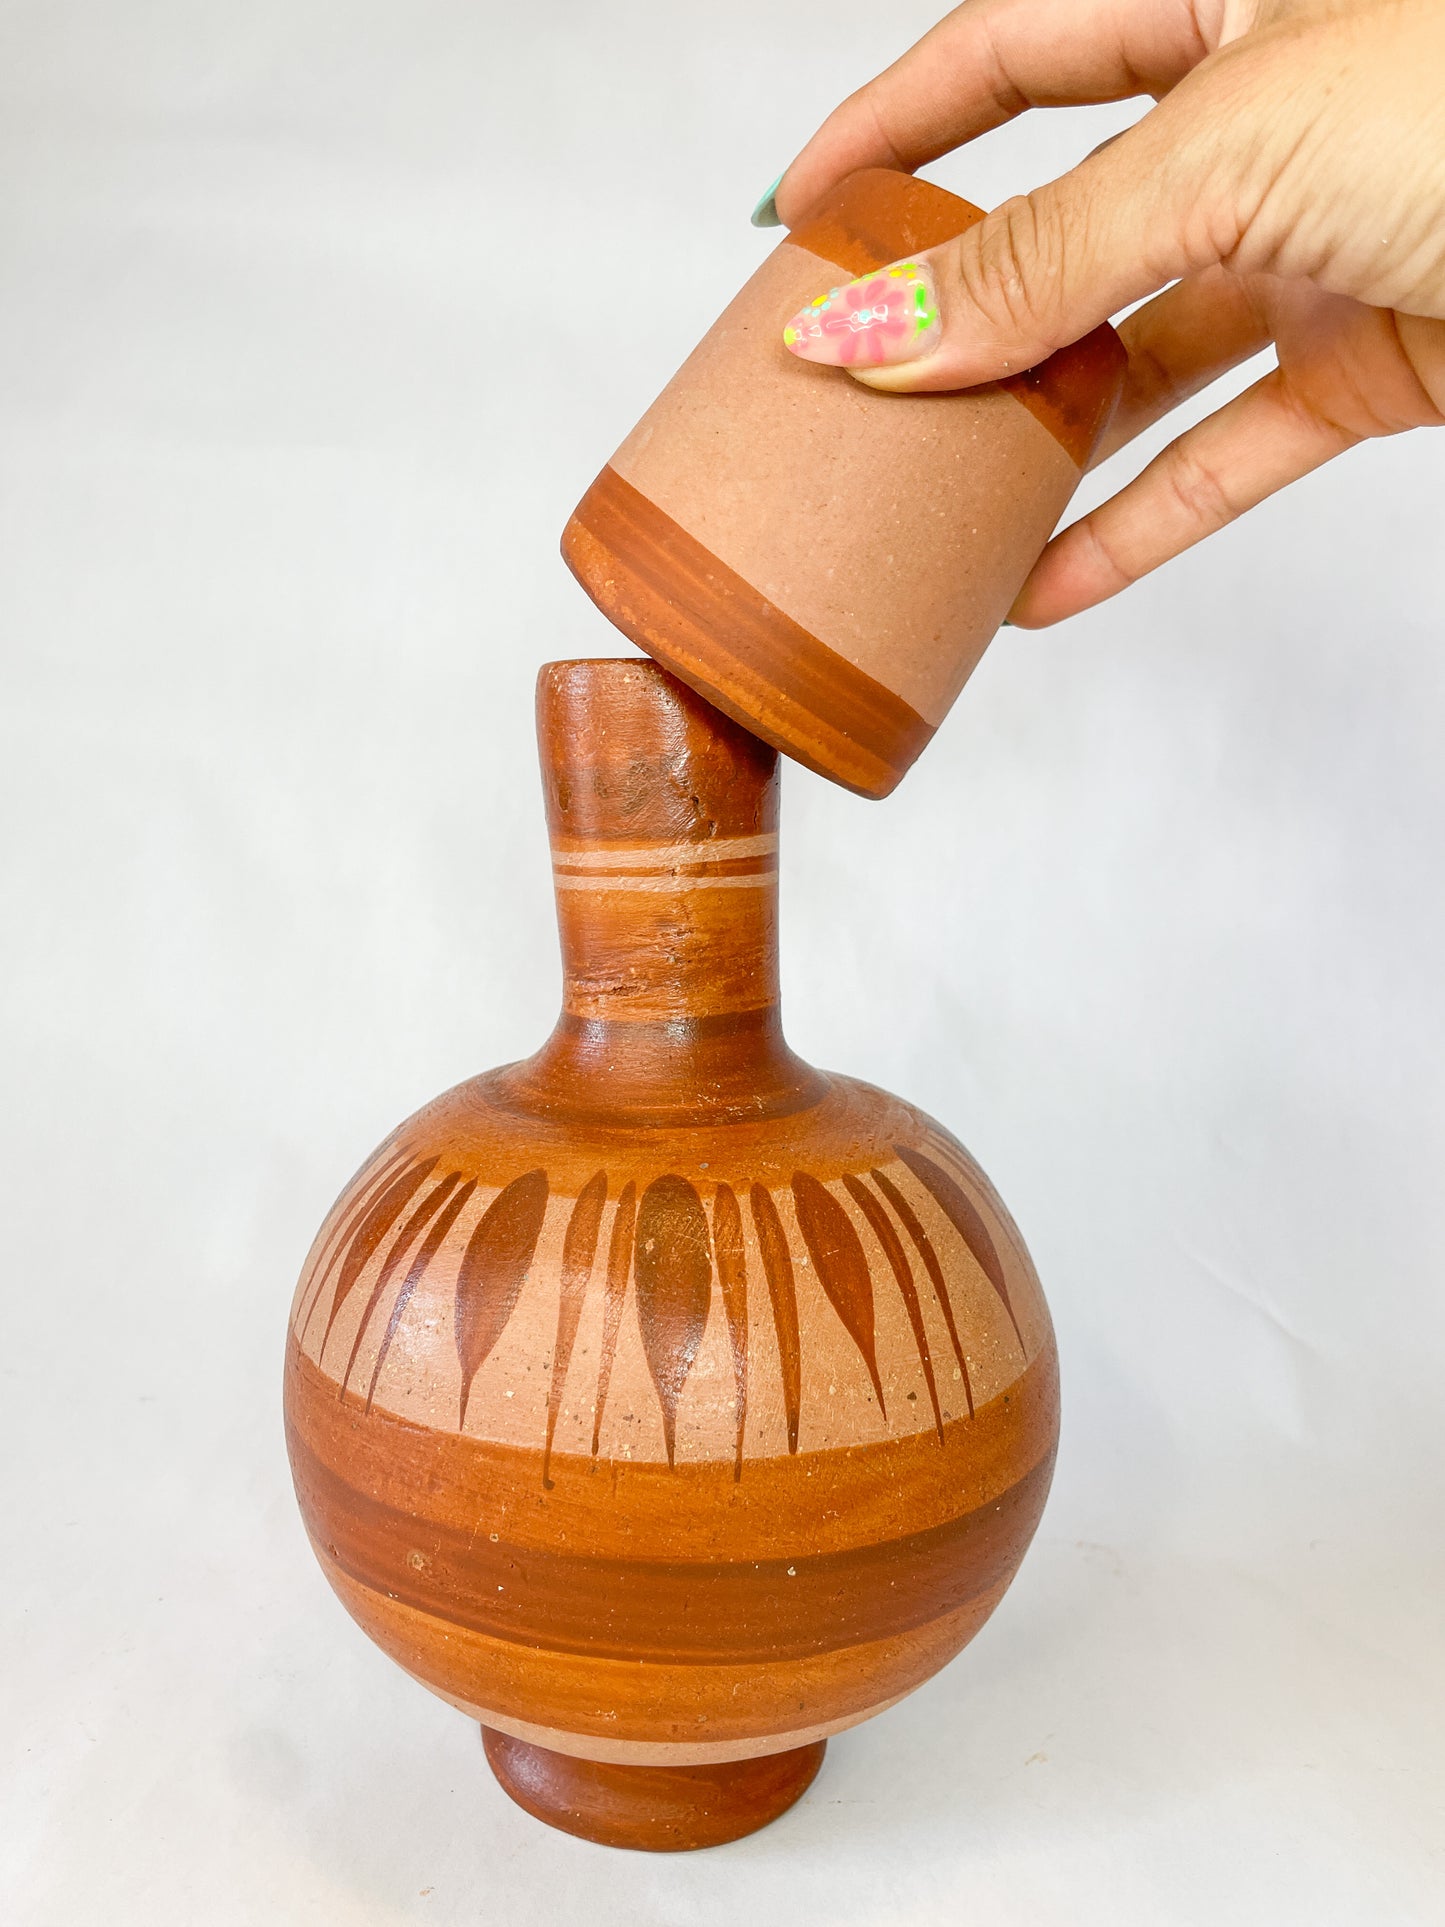 Jalisco Botellon de Barro Clay Water Jug Cantaro de Agua Terracotta Water Jug